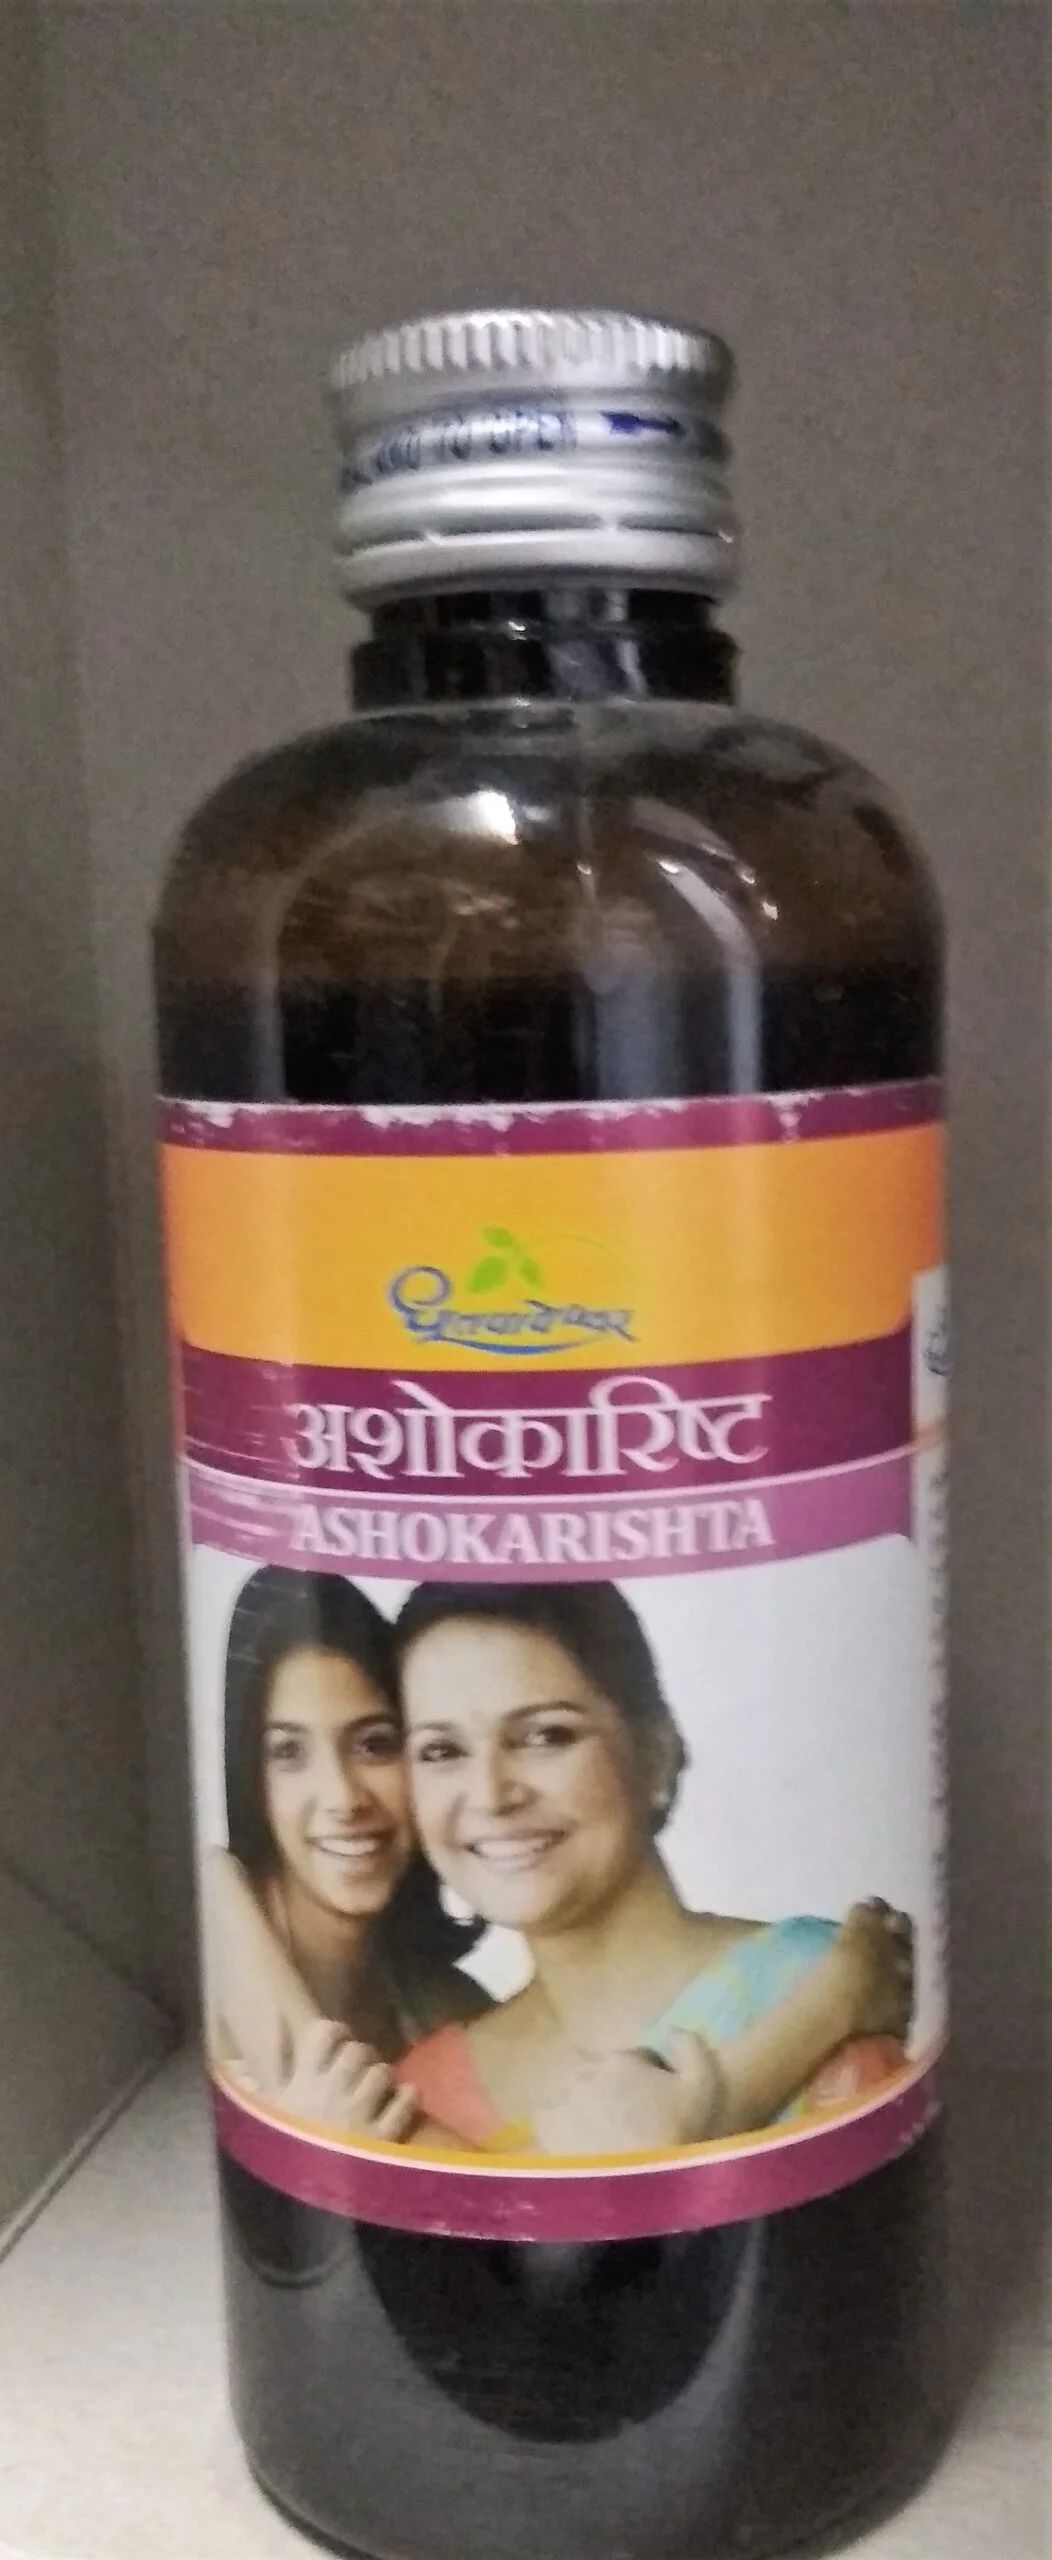 ashokarishta 200ml upto 20% off shree dhootpapeshwar panvel